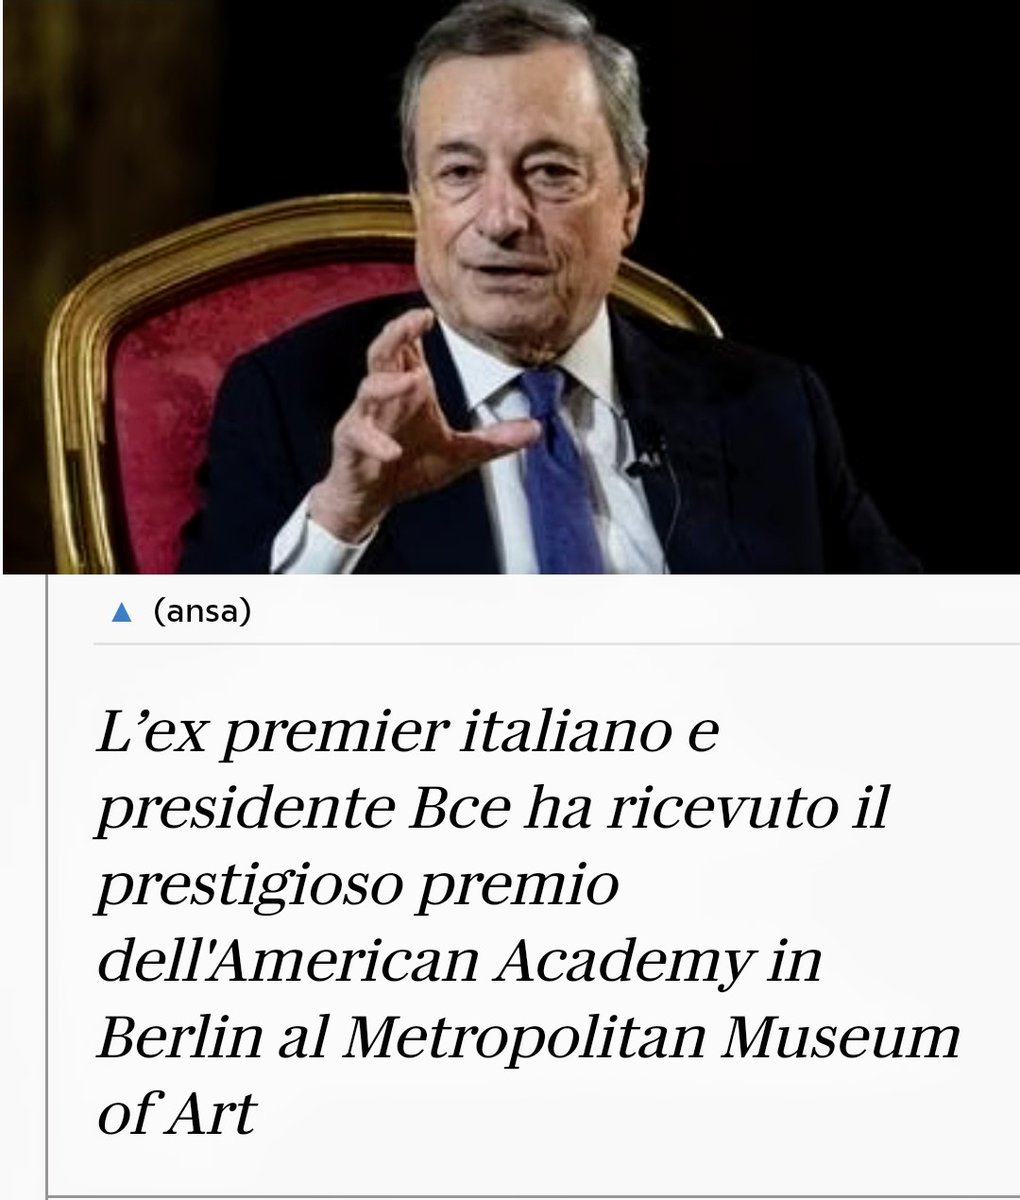 Fiera di aver avuto come Premier Mario Draghi, orgoglio italiano. Un ringraziamento va a @matteorenzi per aver fatto in modo che l'Italia avesse un PdC di così grande prestigio riconosciuto e stimatissimo in tutti gli ambienti istituzionali internazionali.